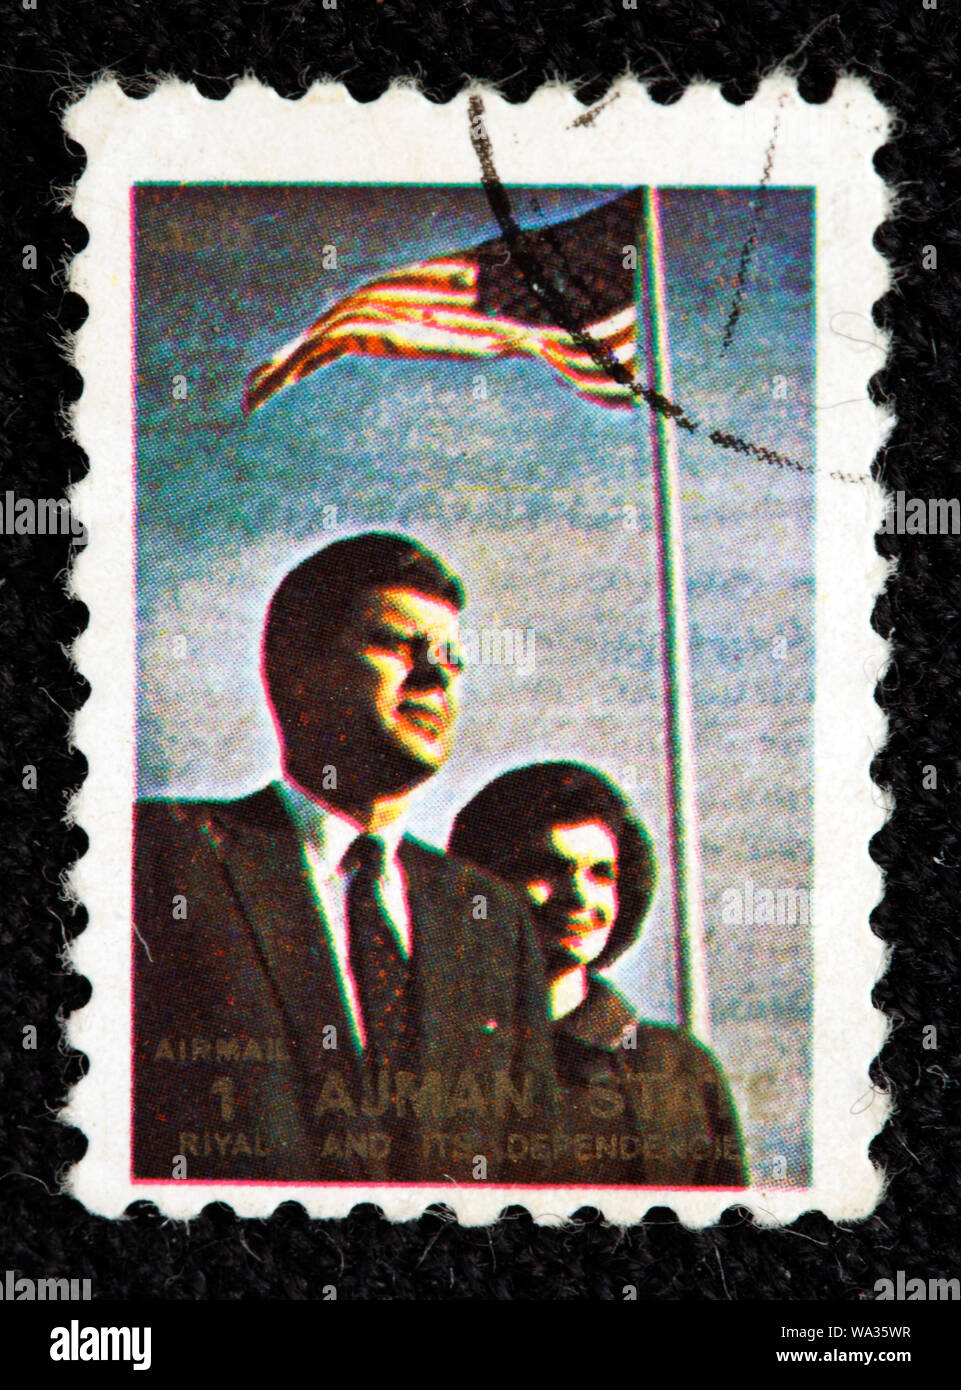 John F. Kennedy (1917-1963), JFK et son épouse Jacqueline, timbre-poste, Ajman, 1973 Banque D'Images